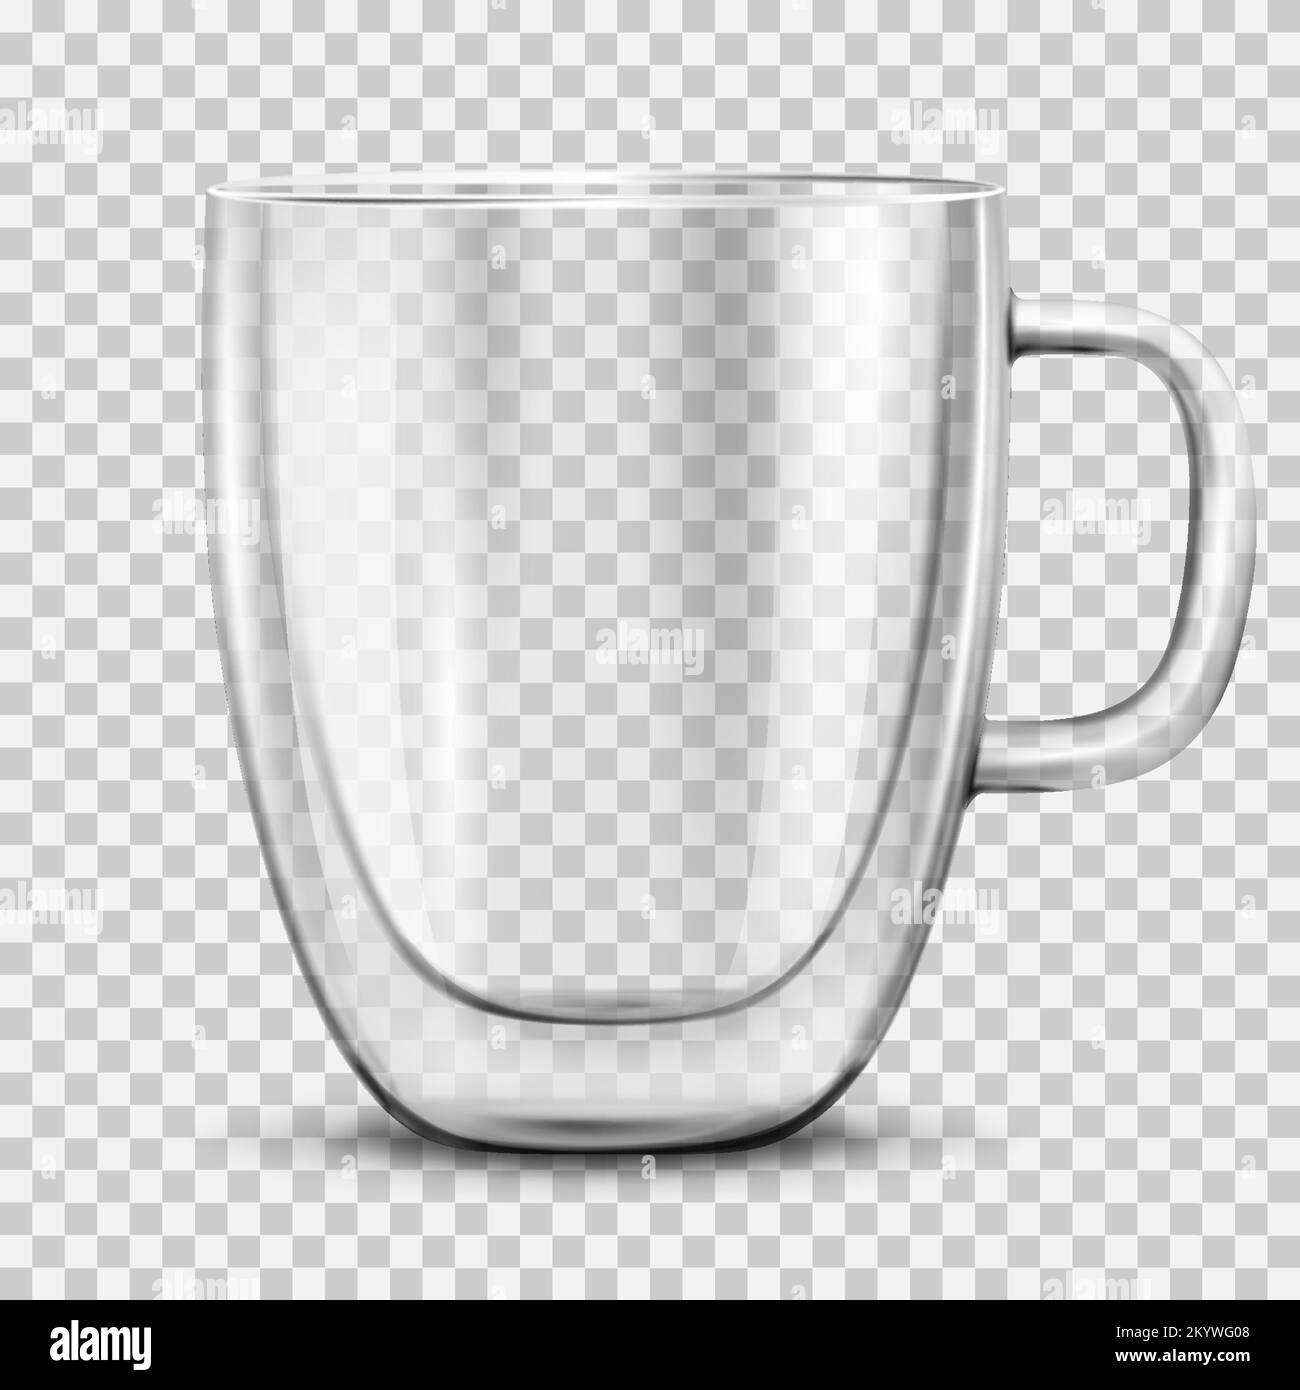 Tasse à café vide en verre, isolée sur fond transparent.Tasse en verre à double paroi avec boisson chaude, cappuccino ou latte.Maquette pour la publicité de marque. Illustration de Vecteur